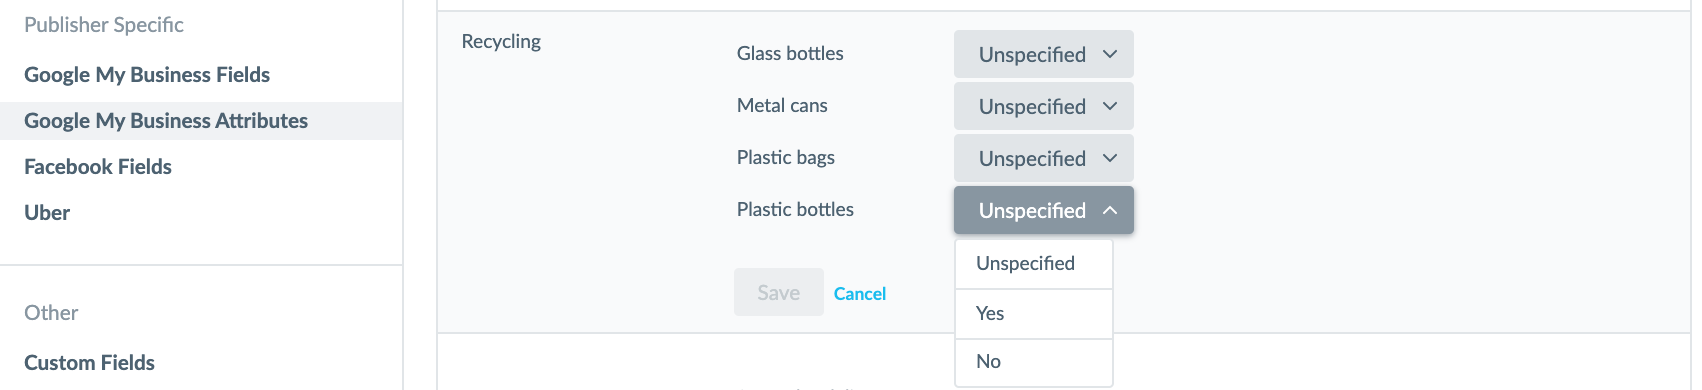 Atributos de reciclaje de Google